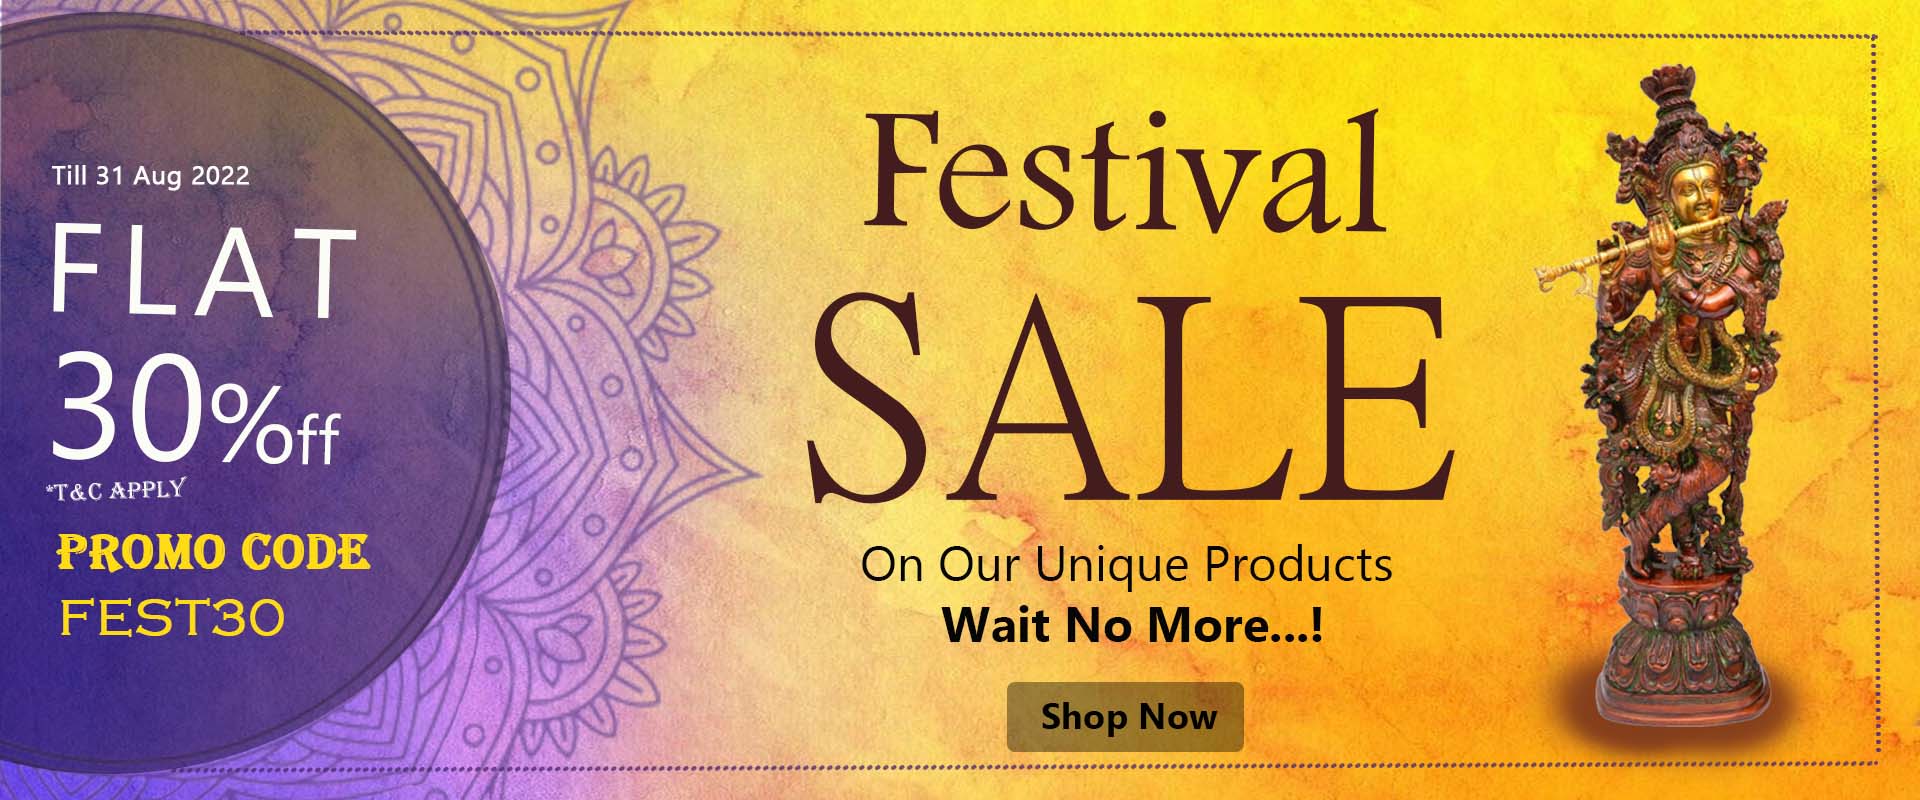 https://www.tarangarts.com/festival-sale/flat-30-percent-sale/flat-30-percentage-sale